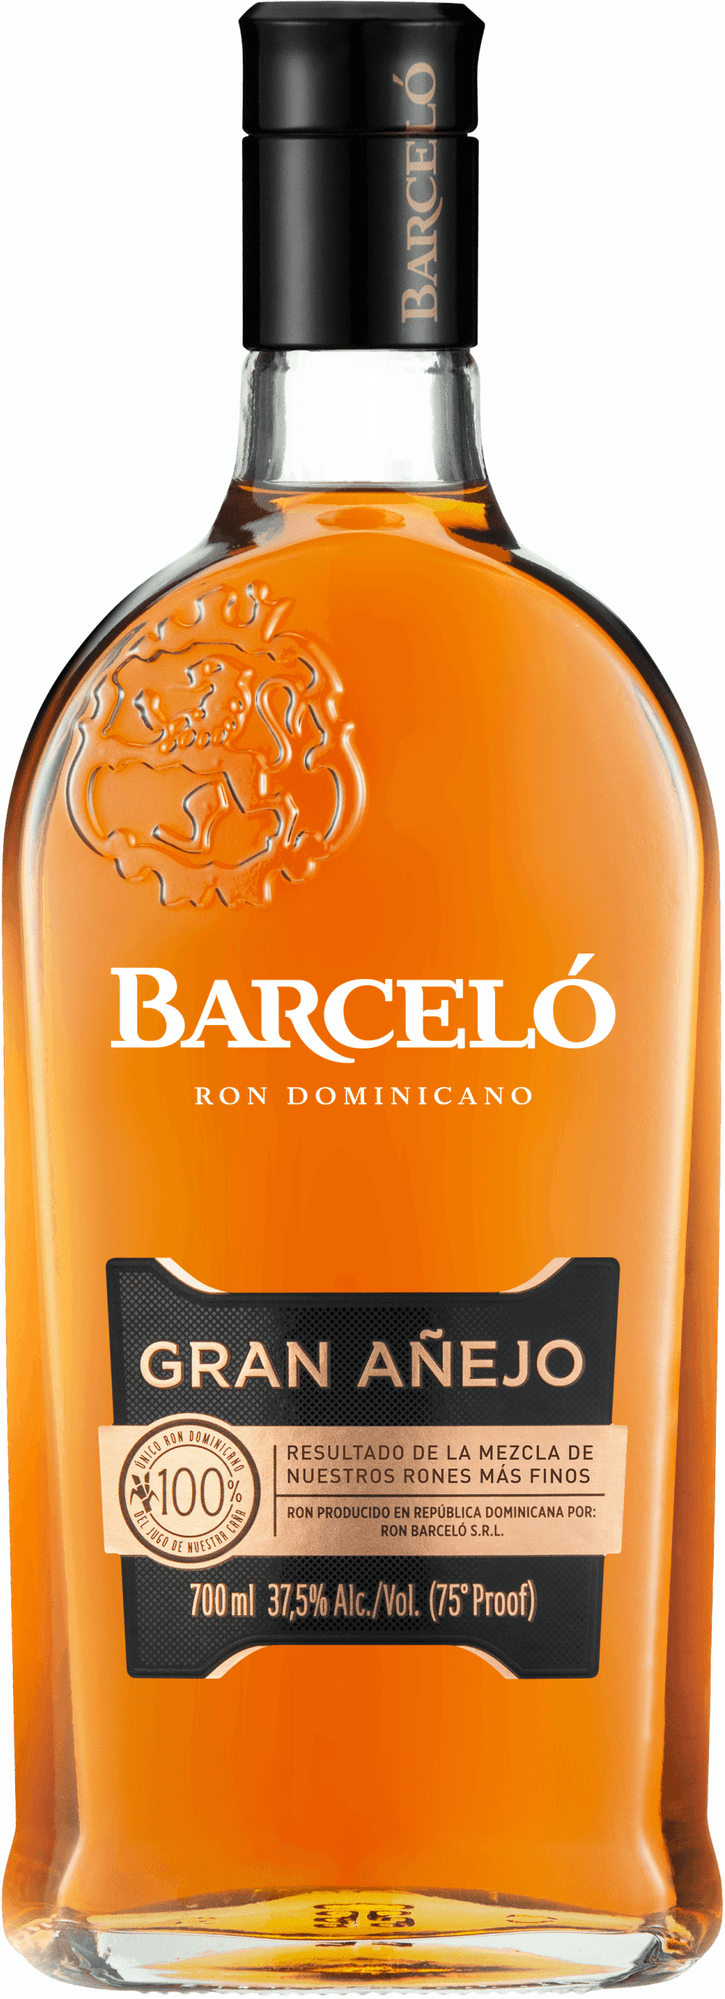 Barceló Gran Aňejo 0,7l 37,5% (holá láhev)